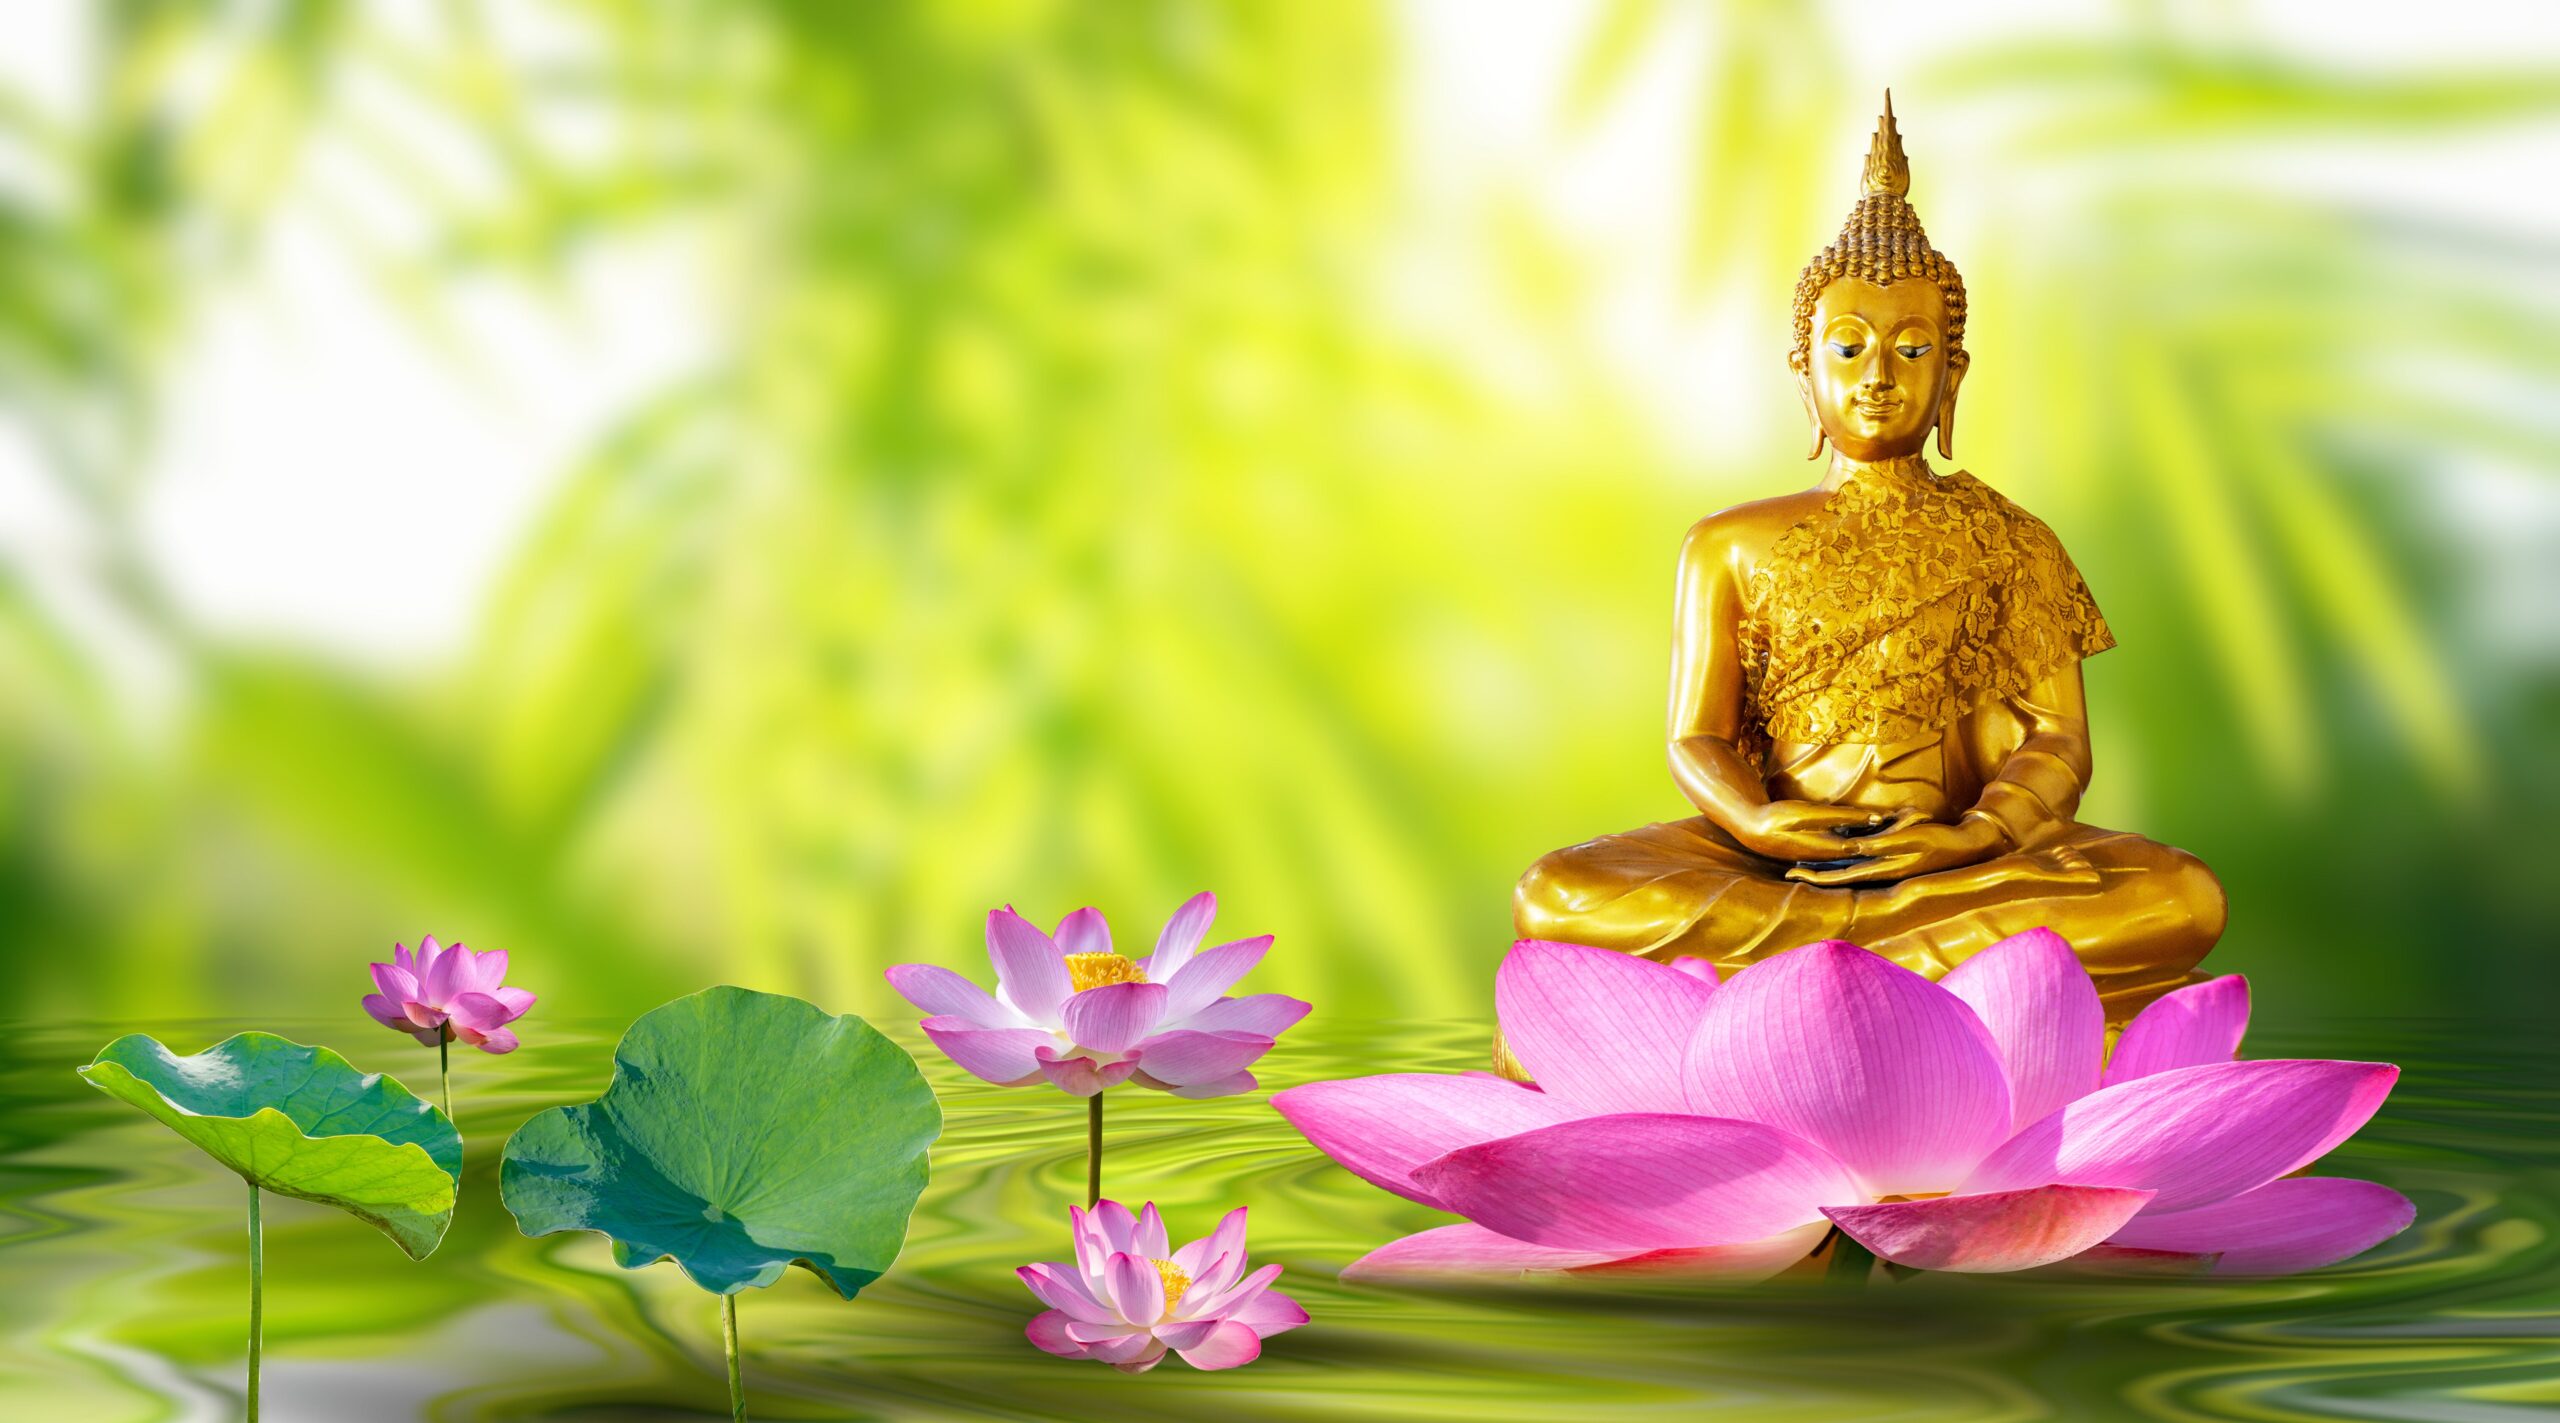 Estatua de Buda flotando en un estanque con flores de loto y fondo de hojas verdes